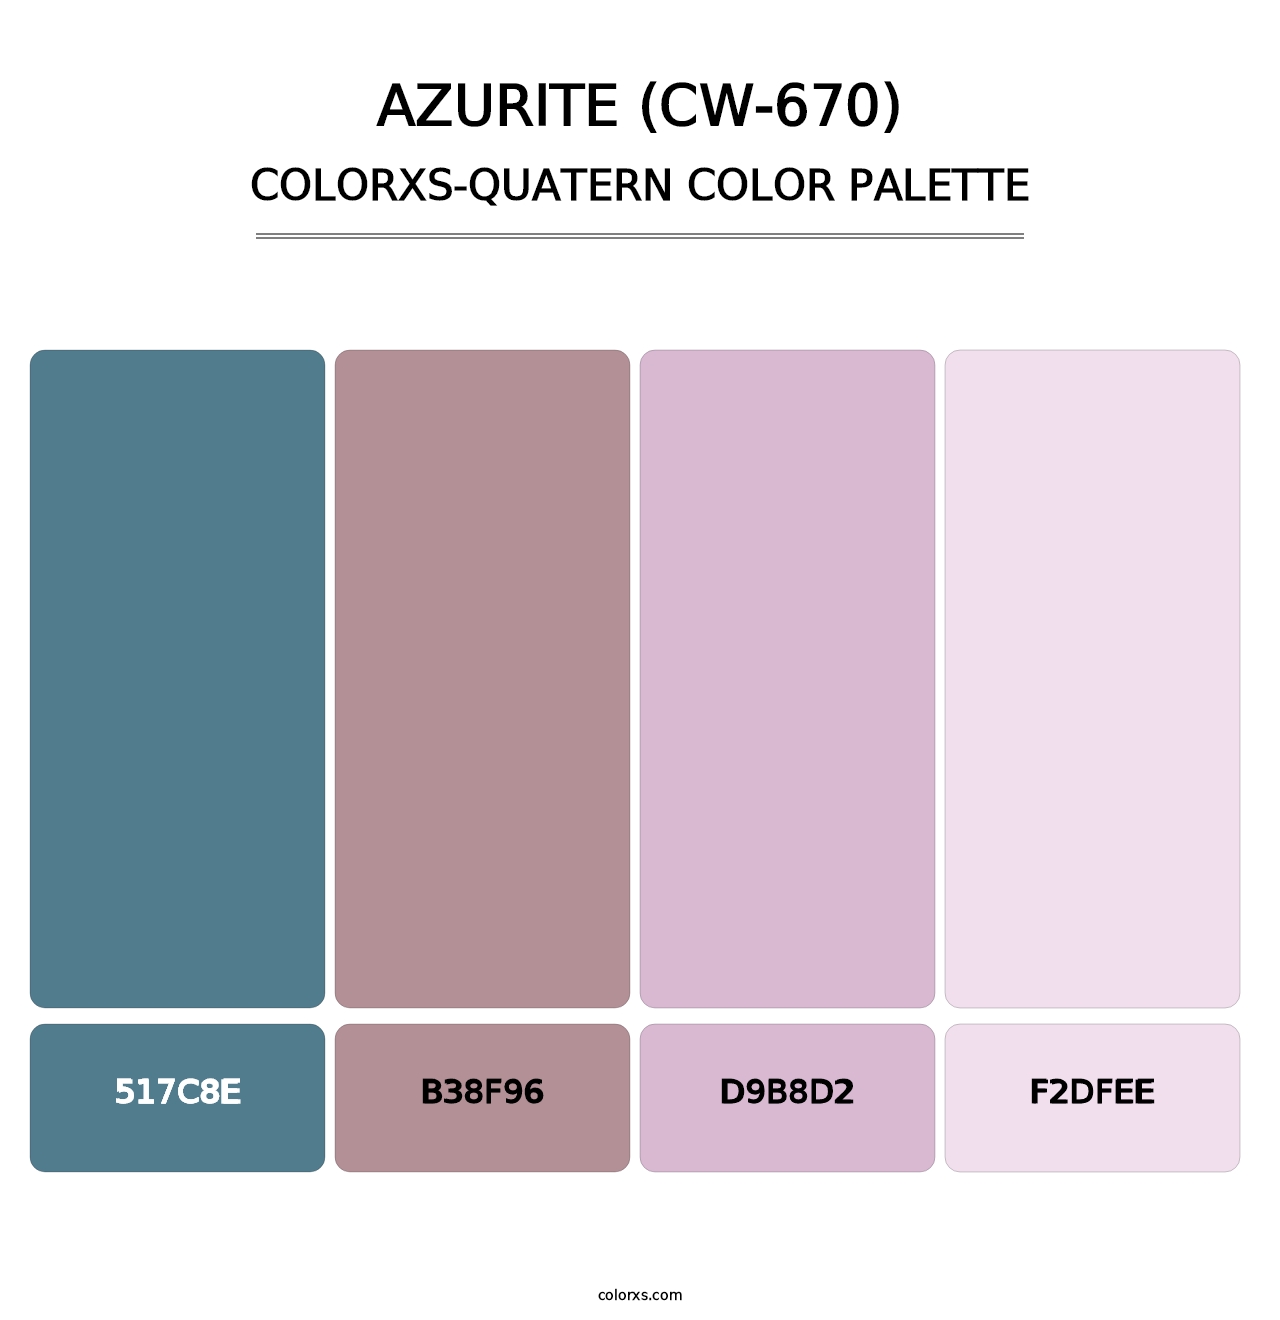 Azurite (CW-670) - Colorxs Quatern Palette